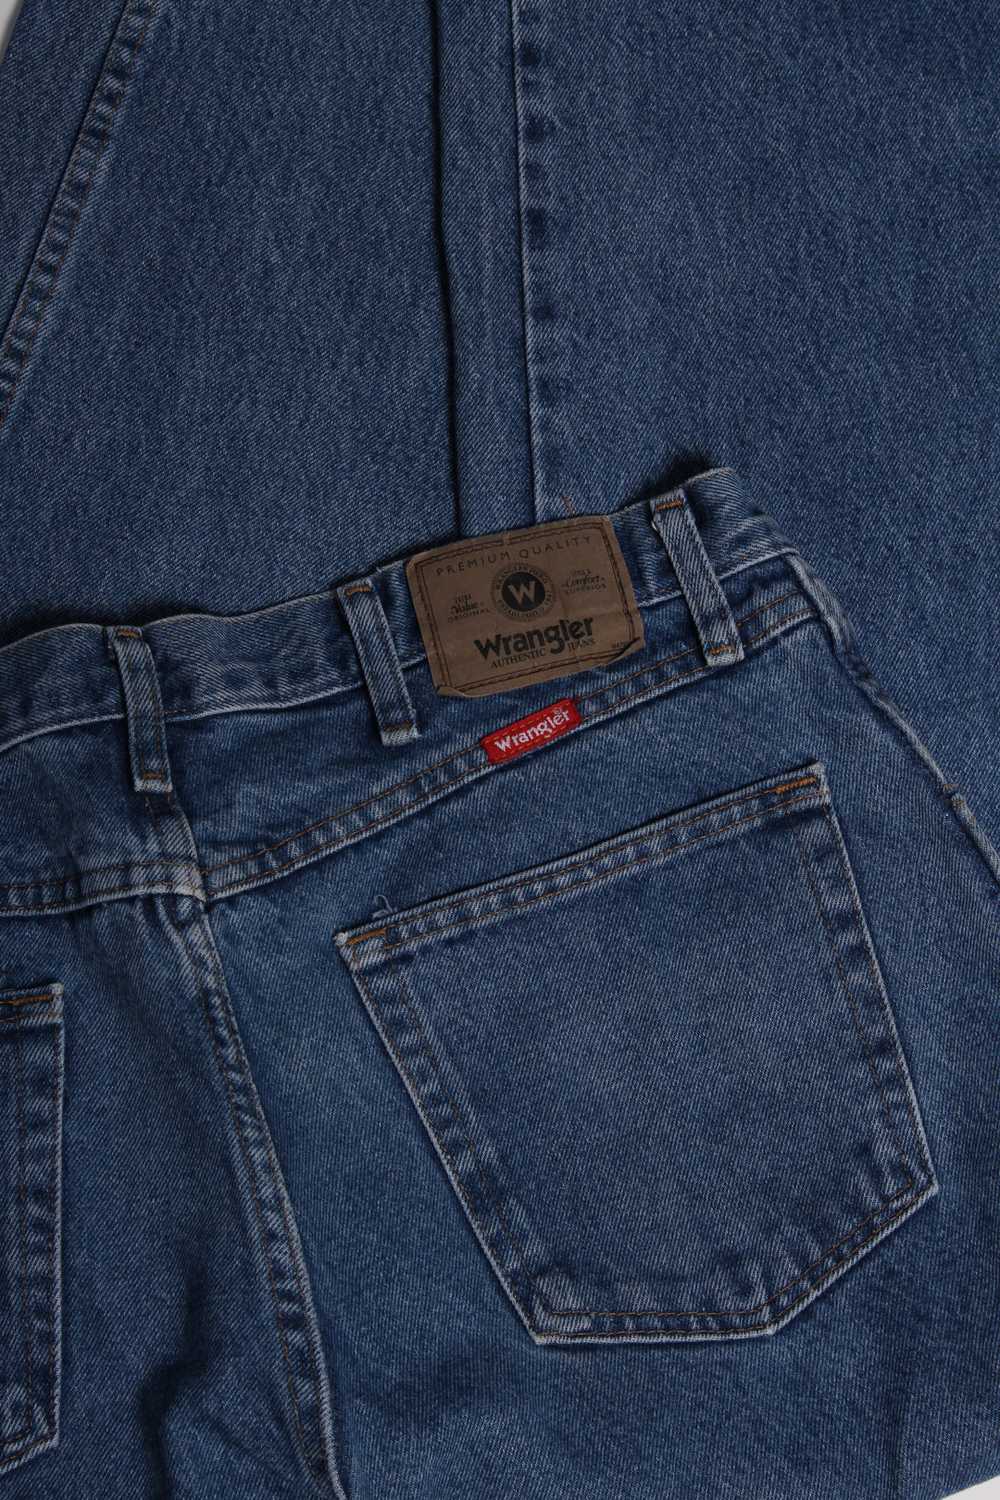 Men's Vintage Wrangler Denim Jeans W34 x L31 - image 4